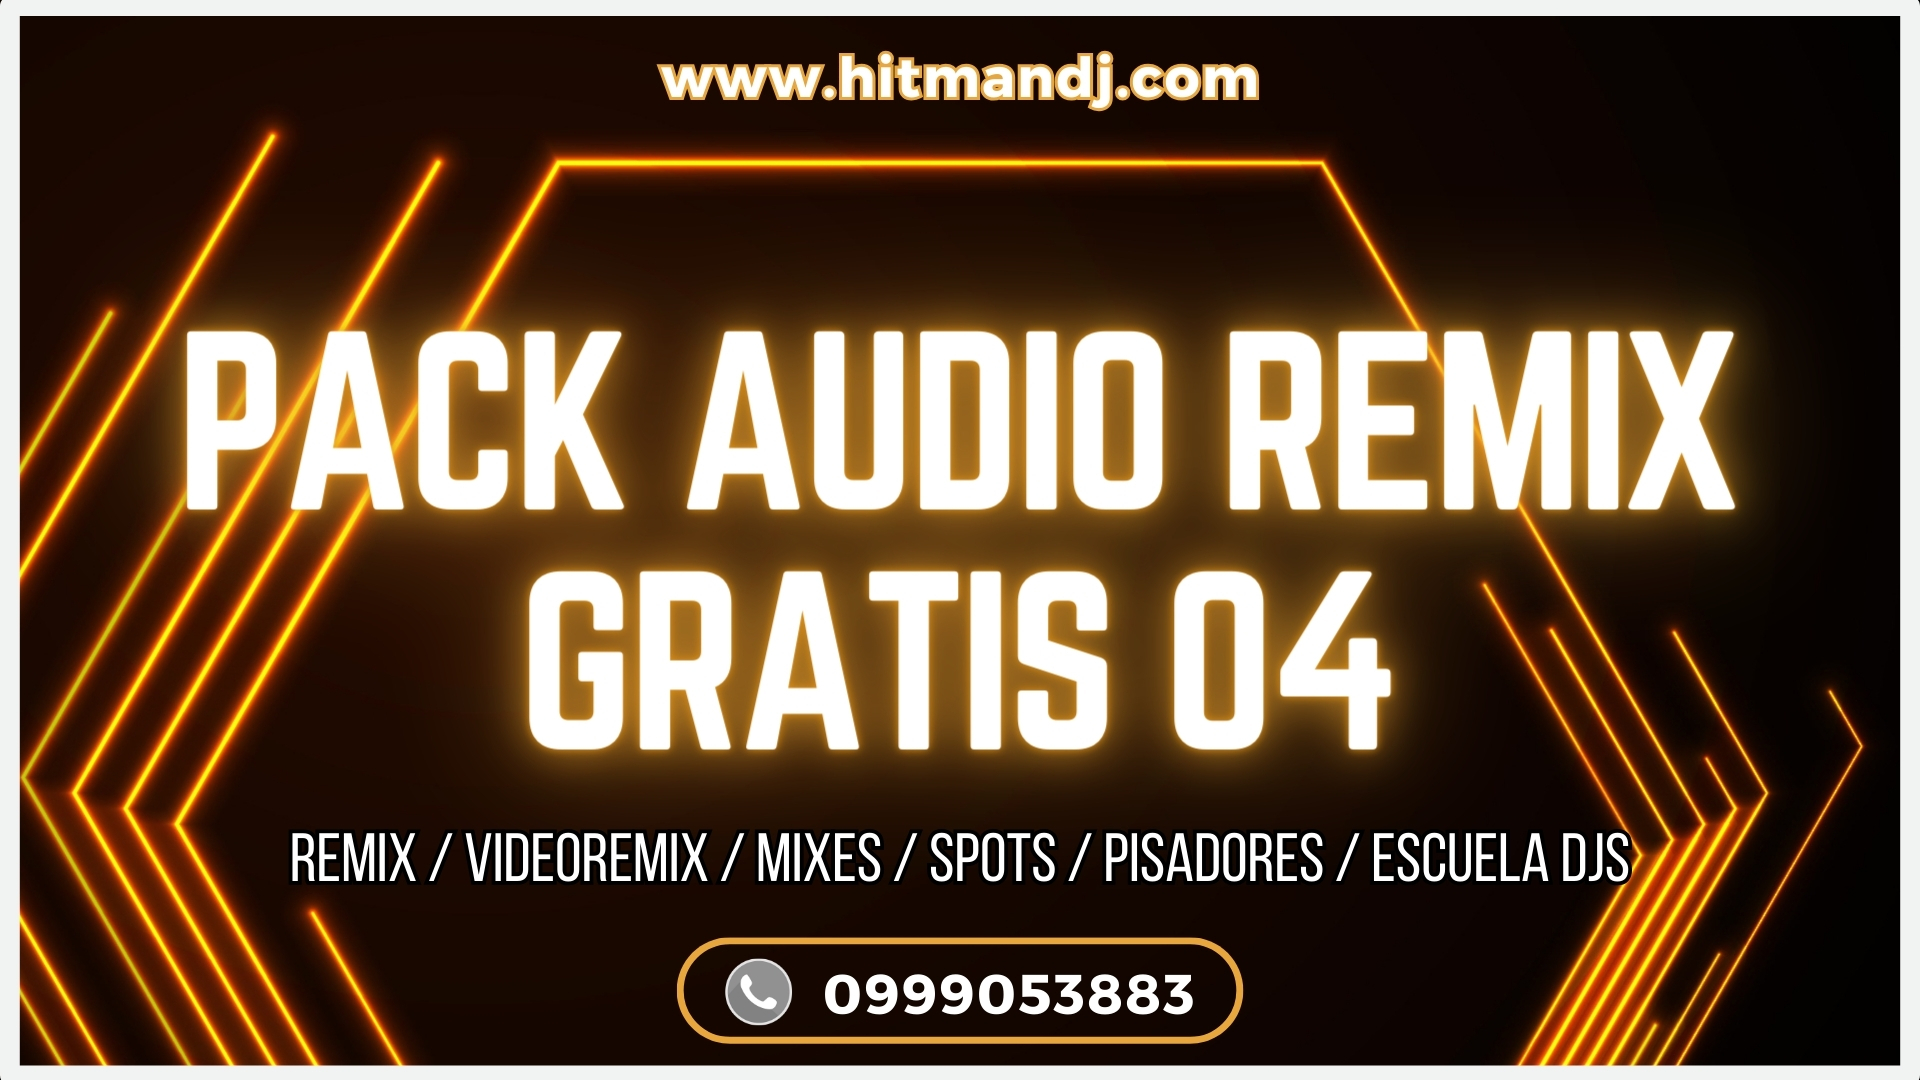 PACK AUDIO REMIX GRATIS 04